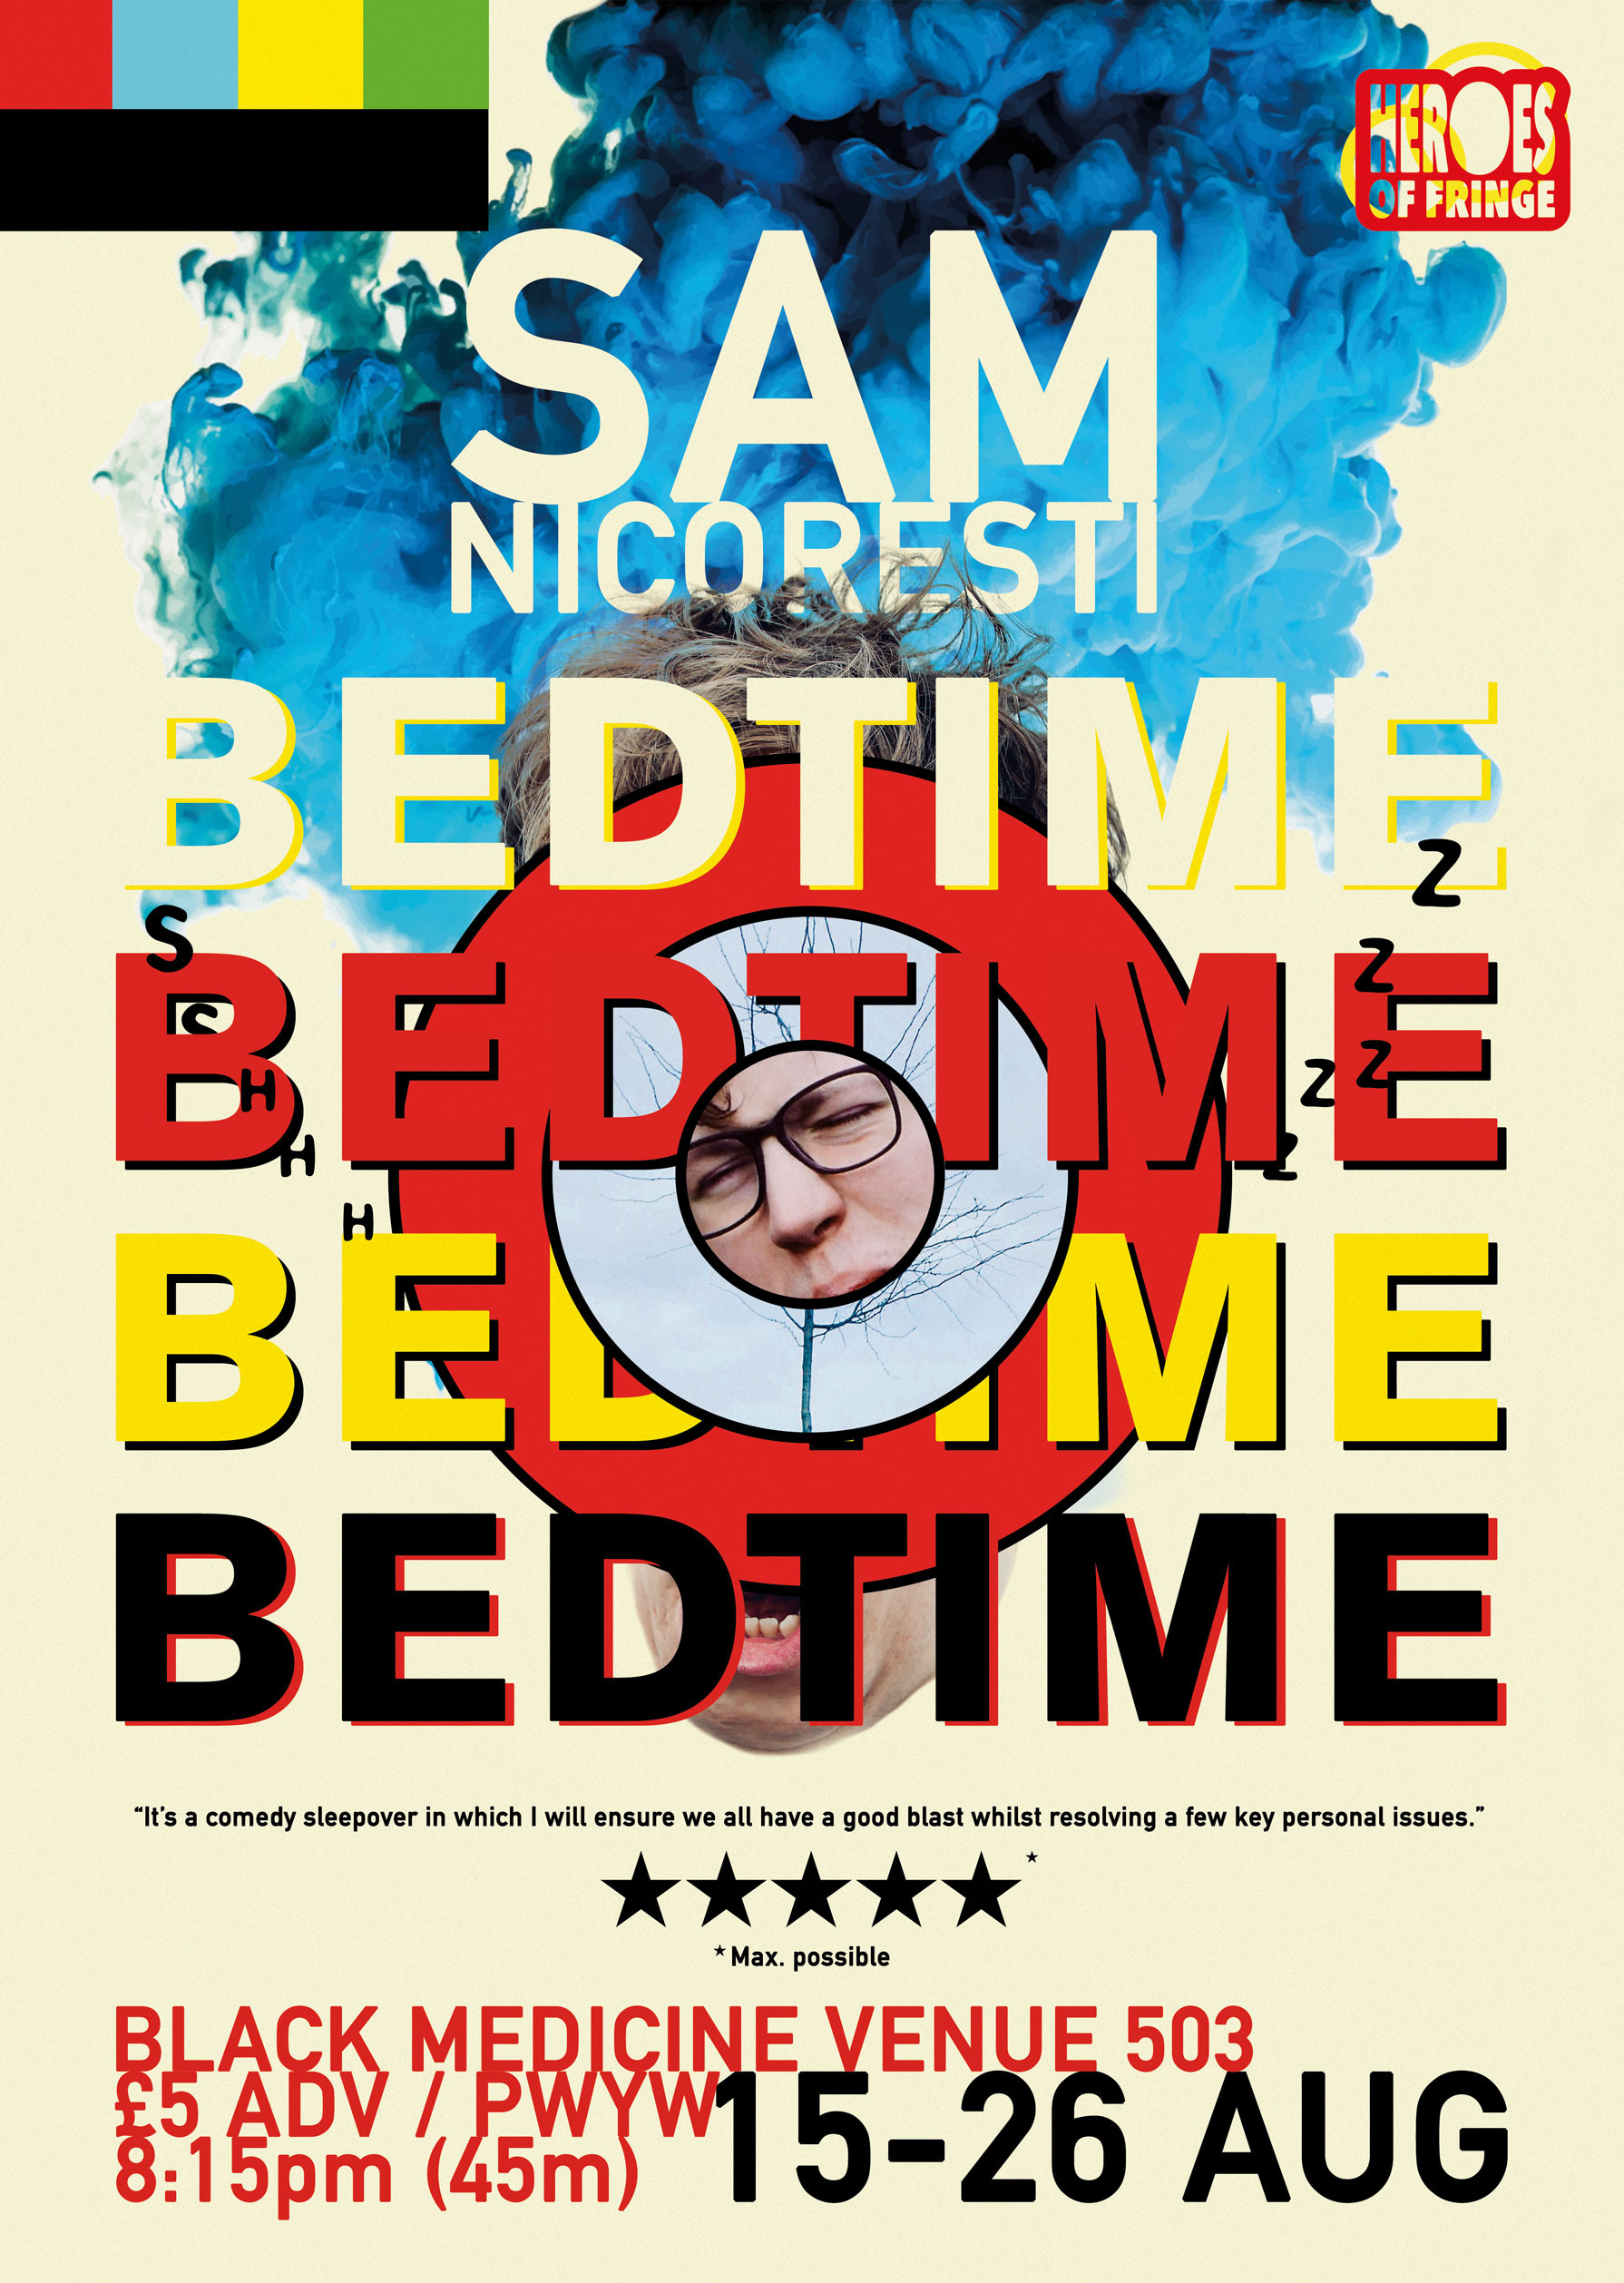 The poster for Sam Nicoresti's Bedtime